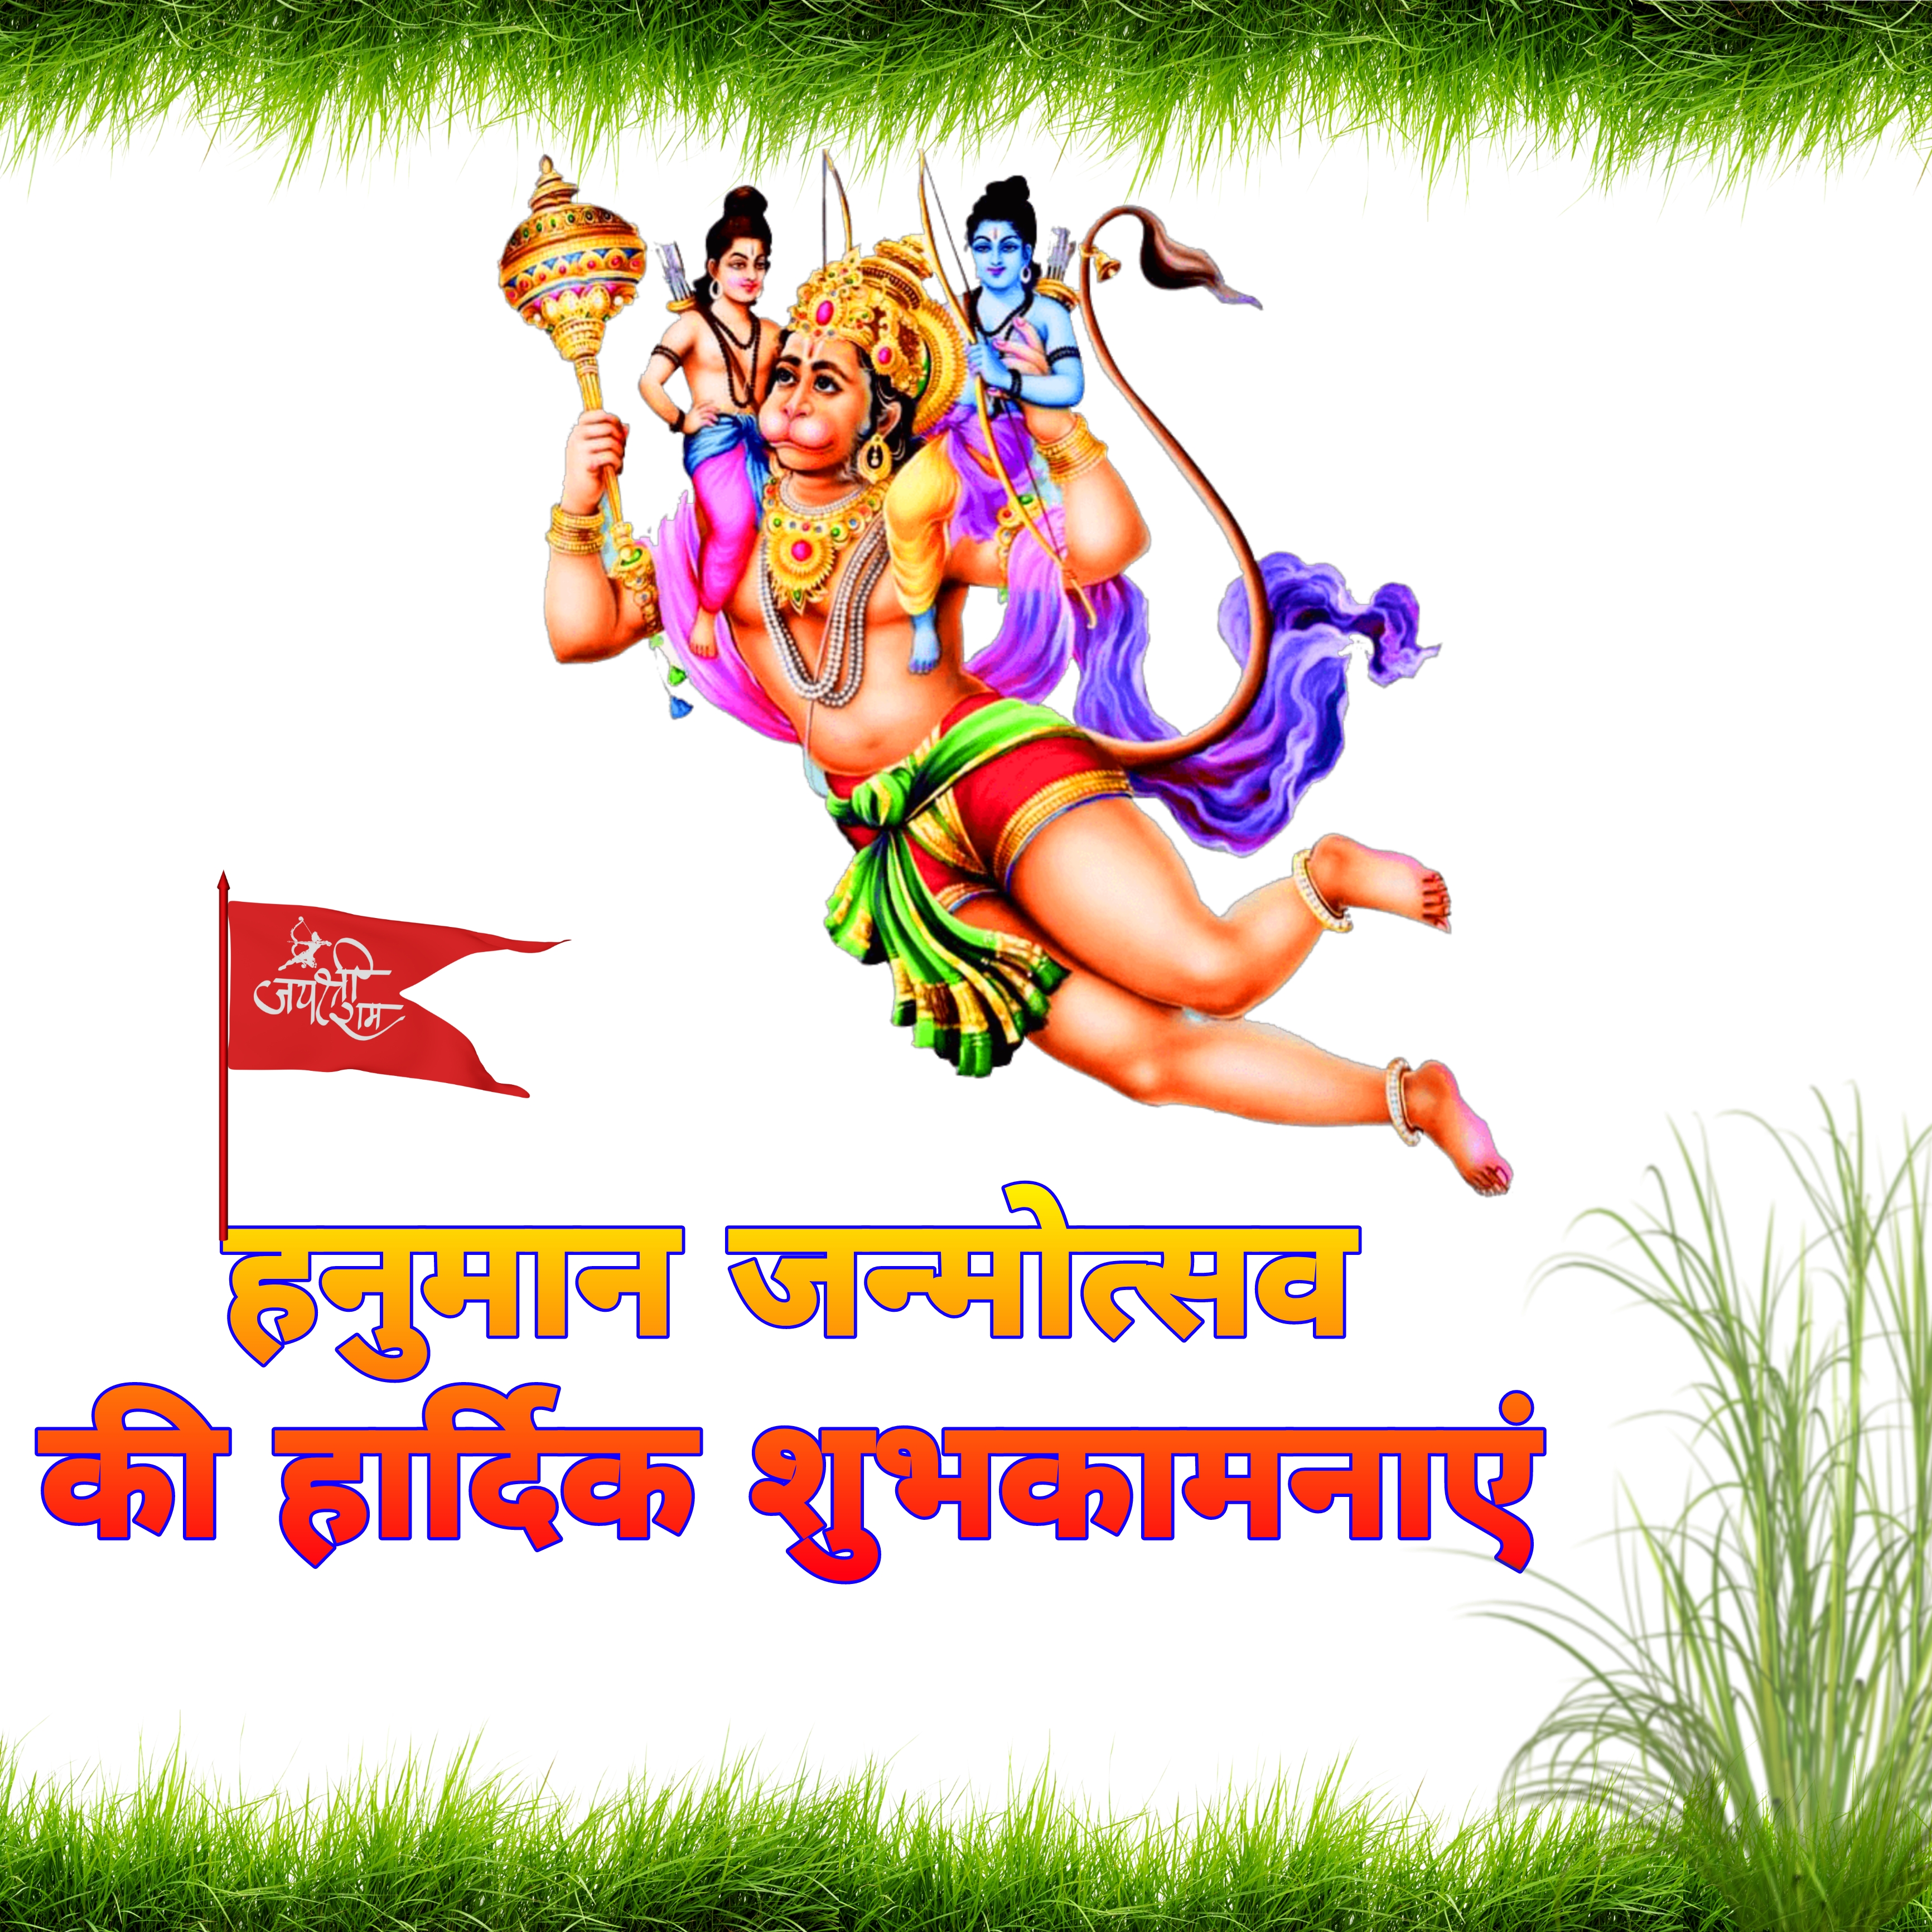 हनमन जनमतसव क हरदक शभकमनए फट वलपपर  Hanuman janmotsav  photo images wallpaper wishes in hindi